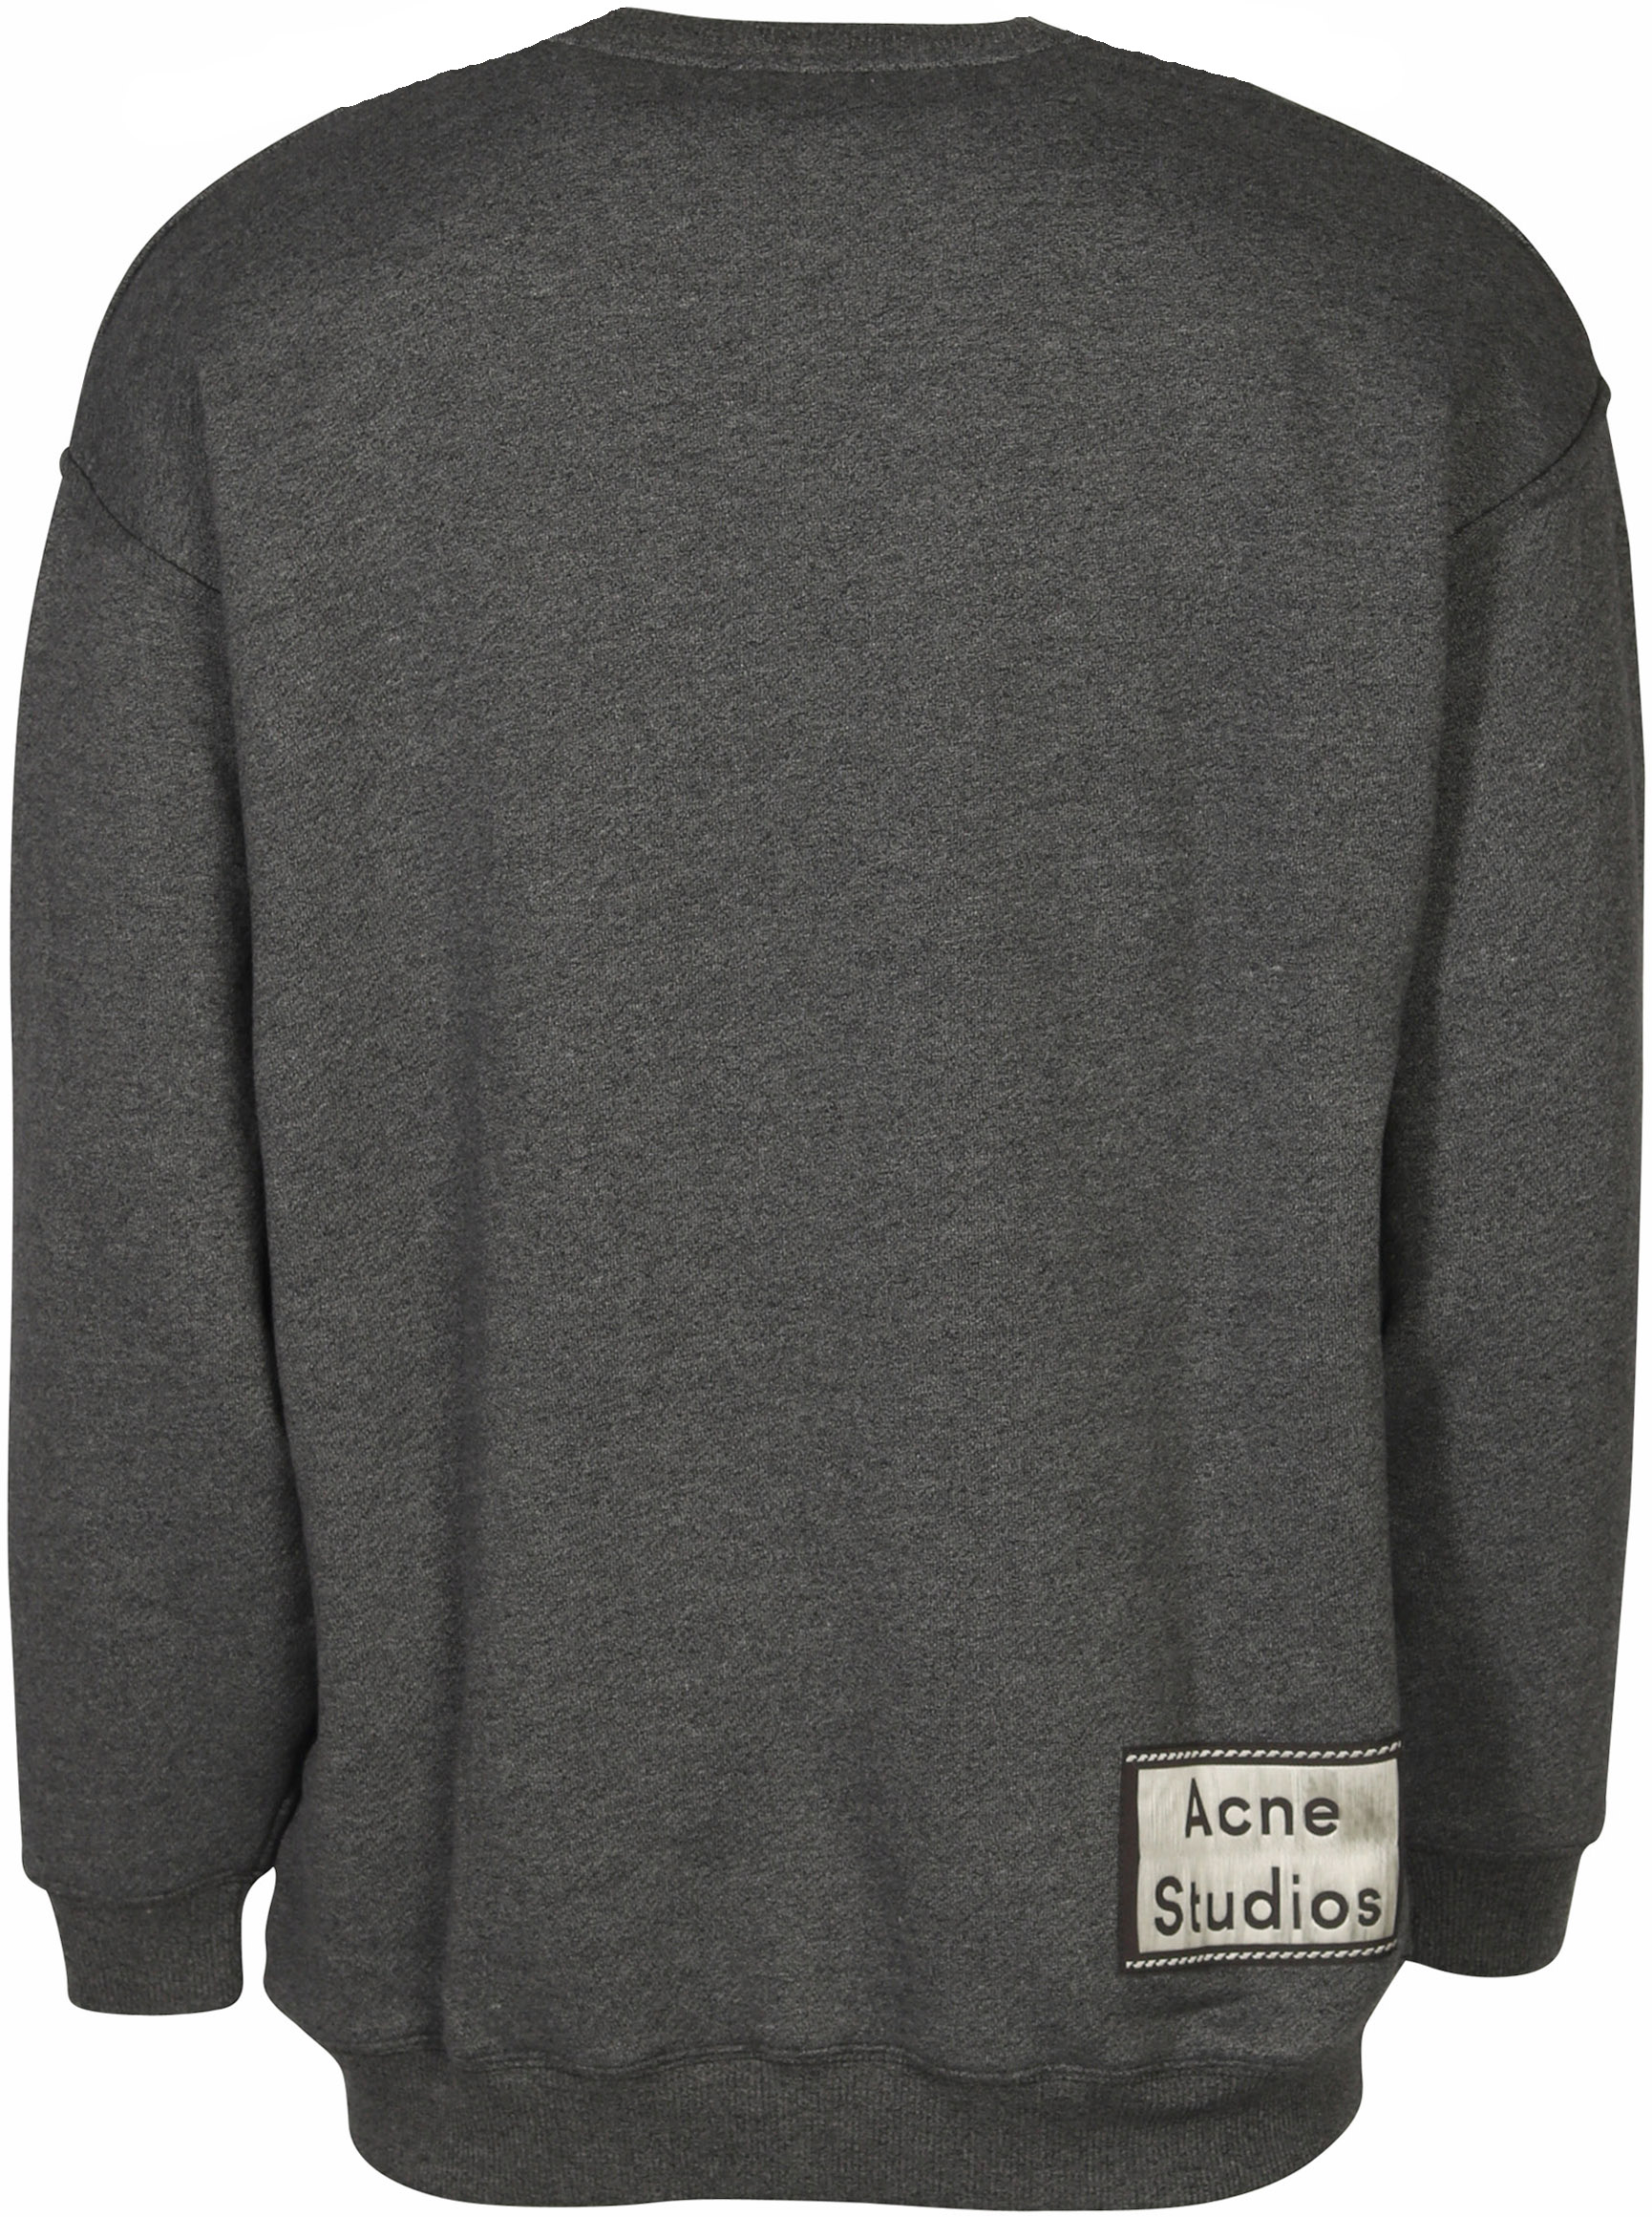 Acne Studios Sweatshirt Fiene Reverse Label Black XS